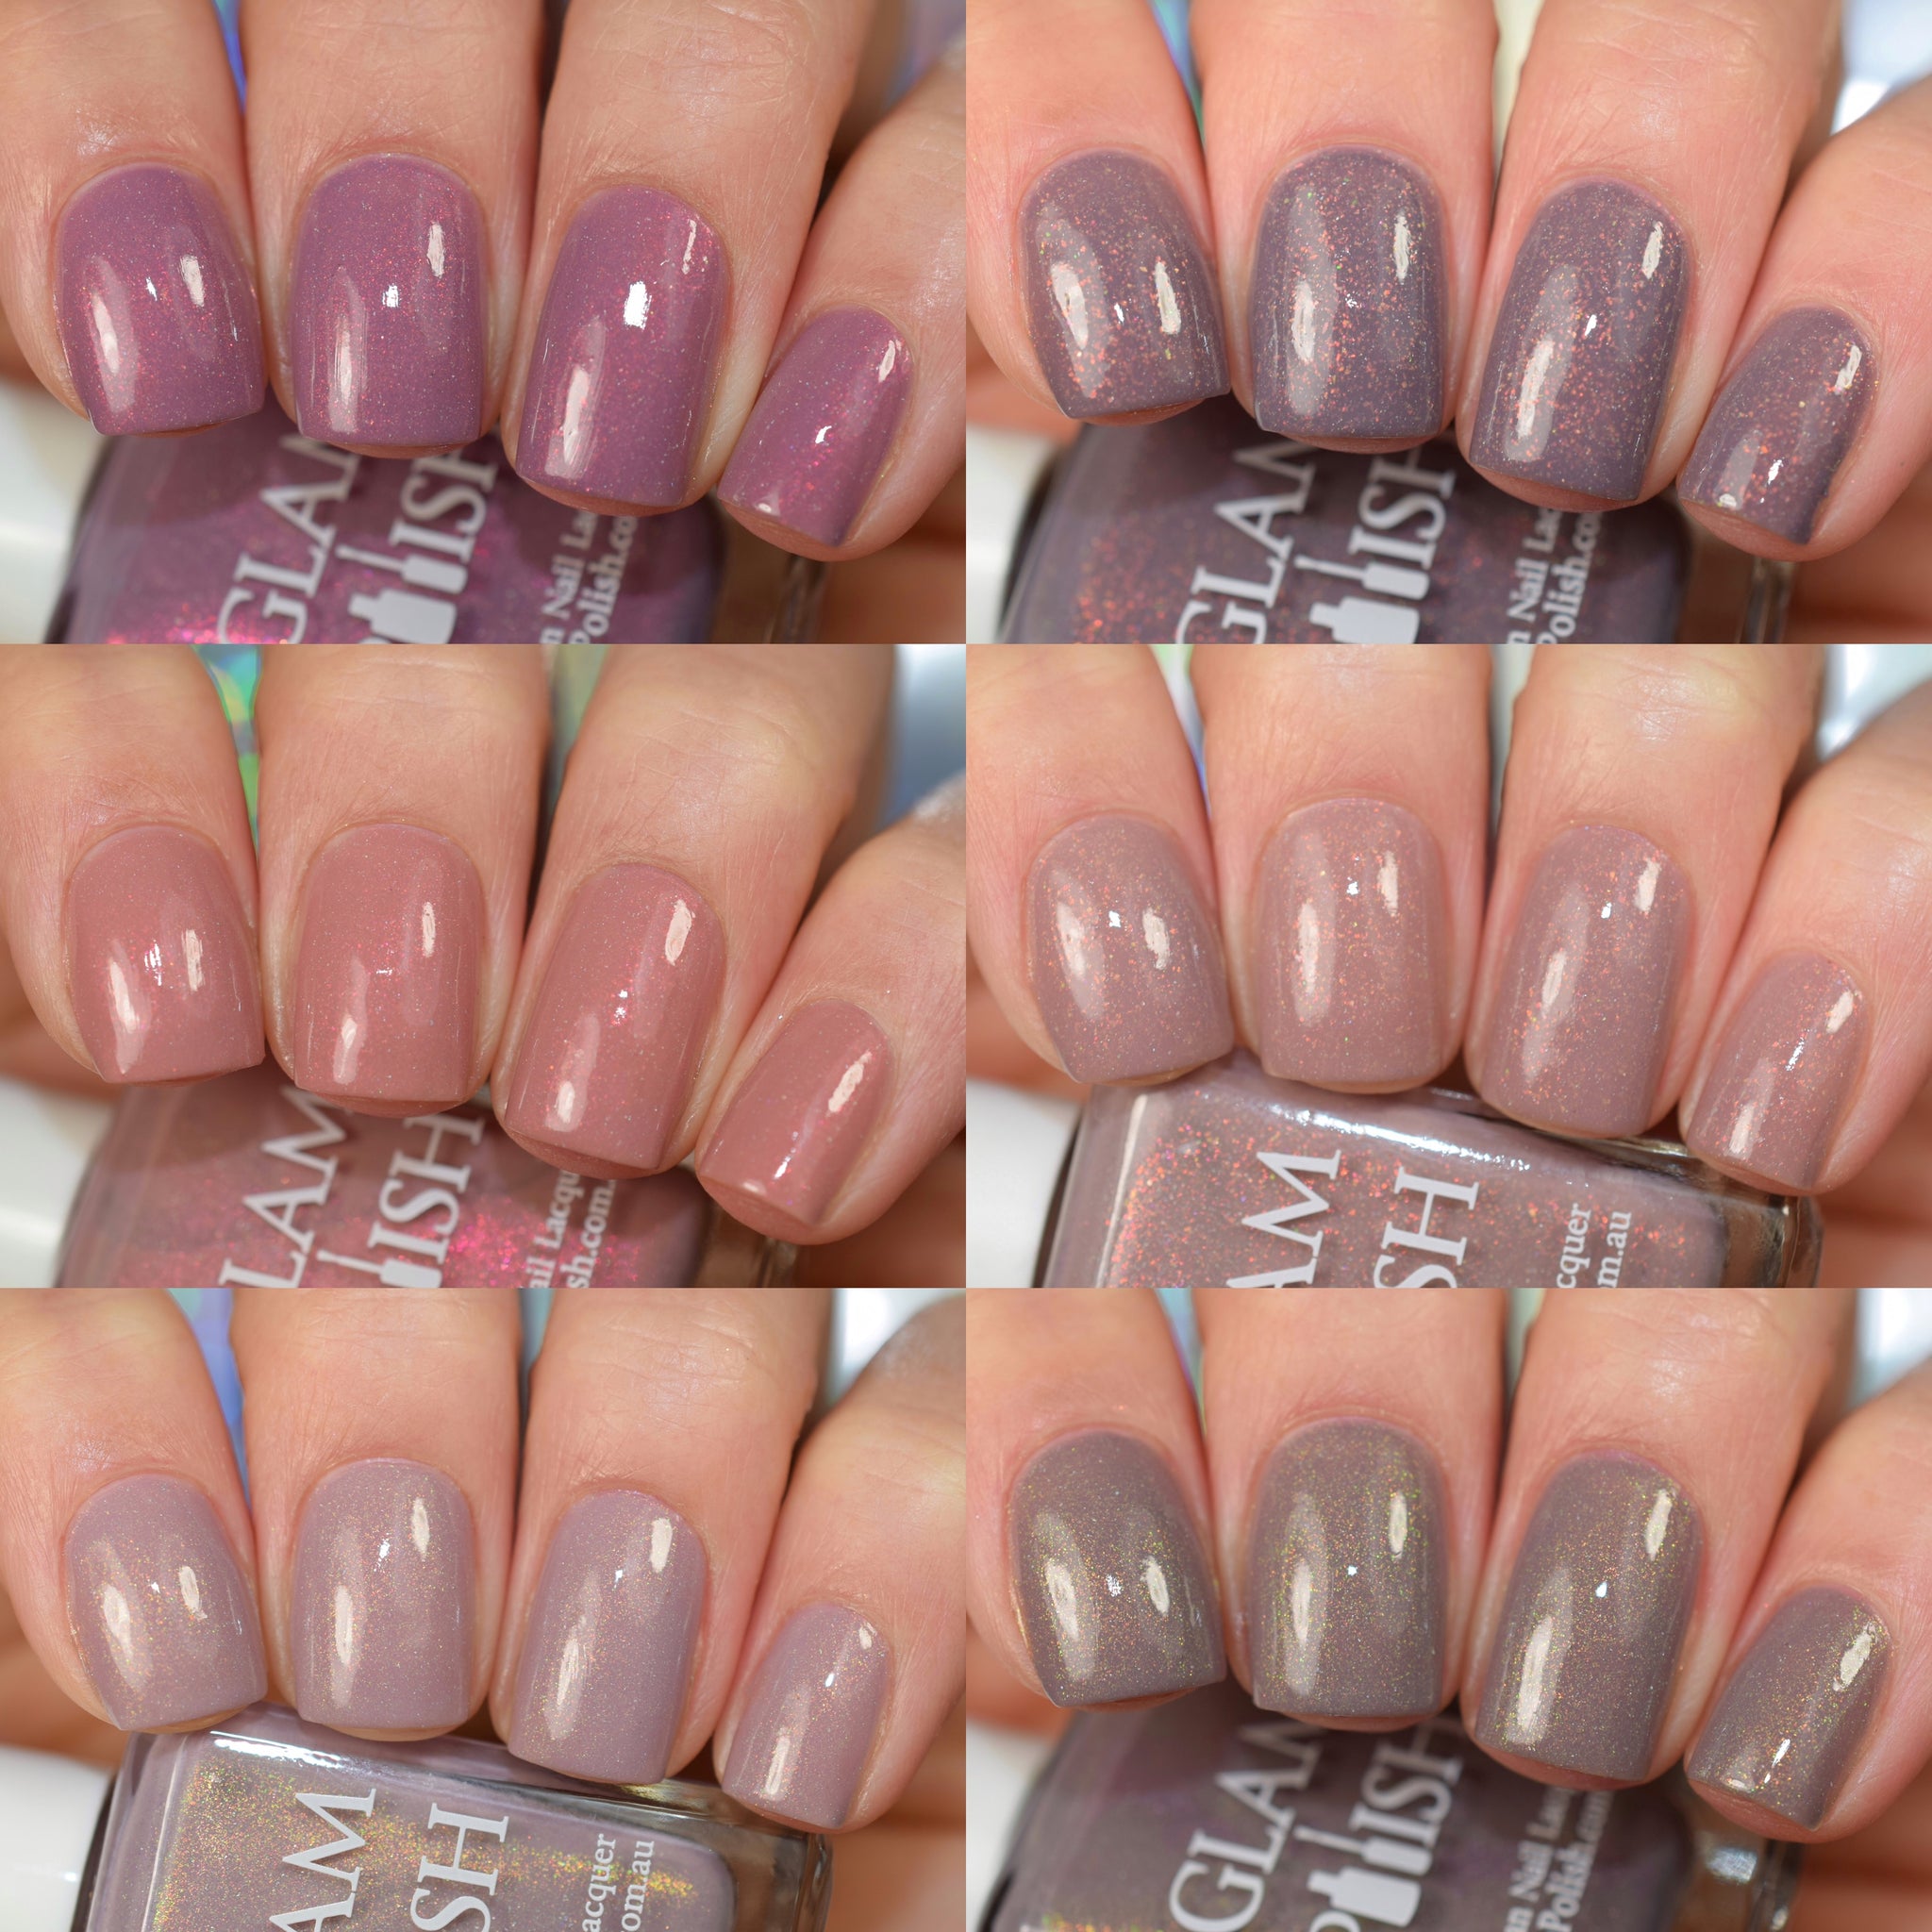 MASABA by Nykaa nail polish shade- Rawr 275 | Nail polish, Nails, Polish